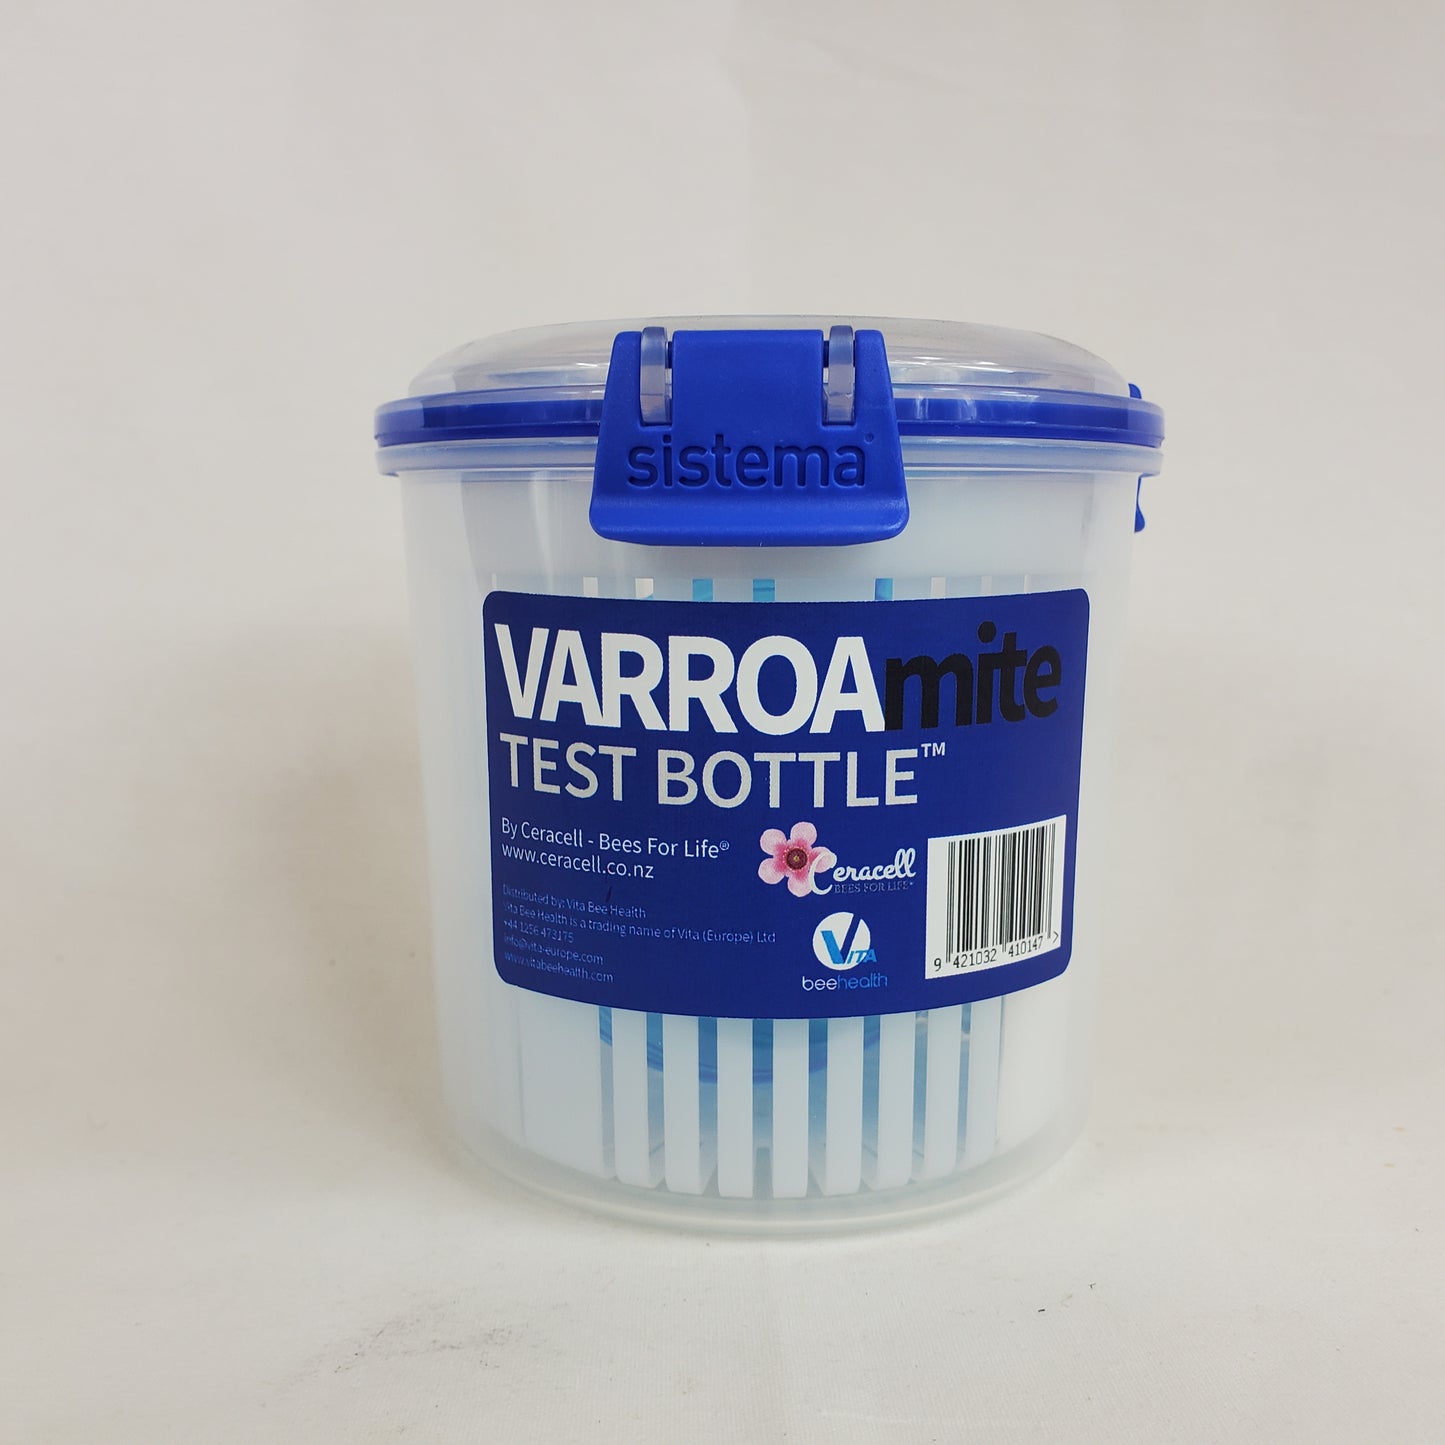 Varoa test bottle